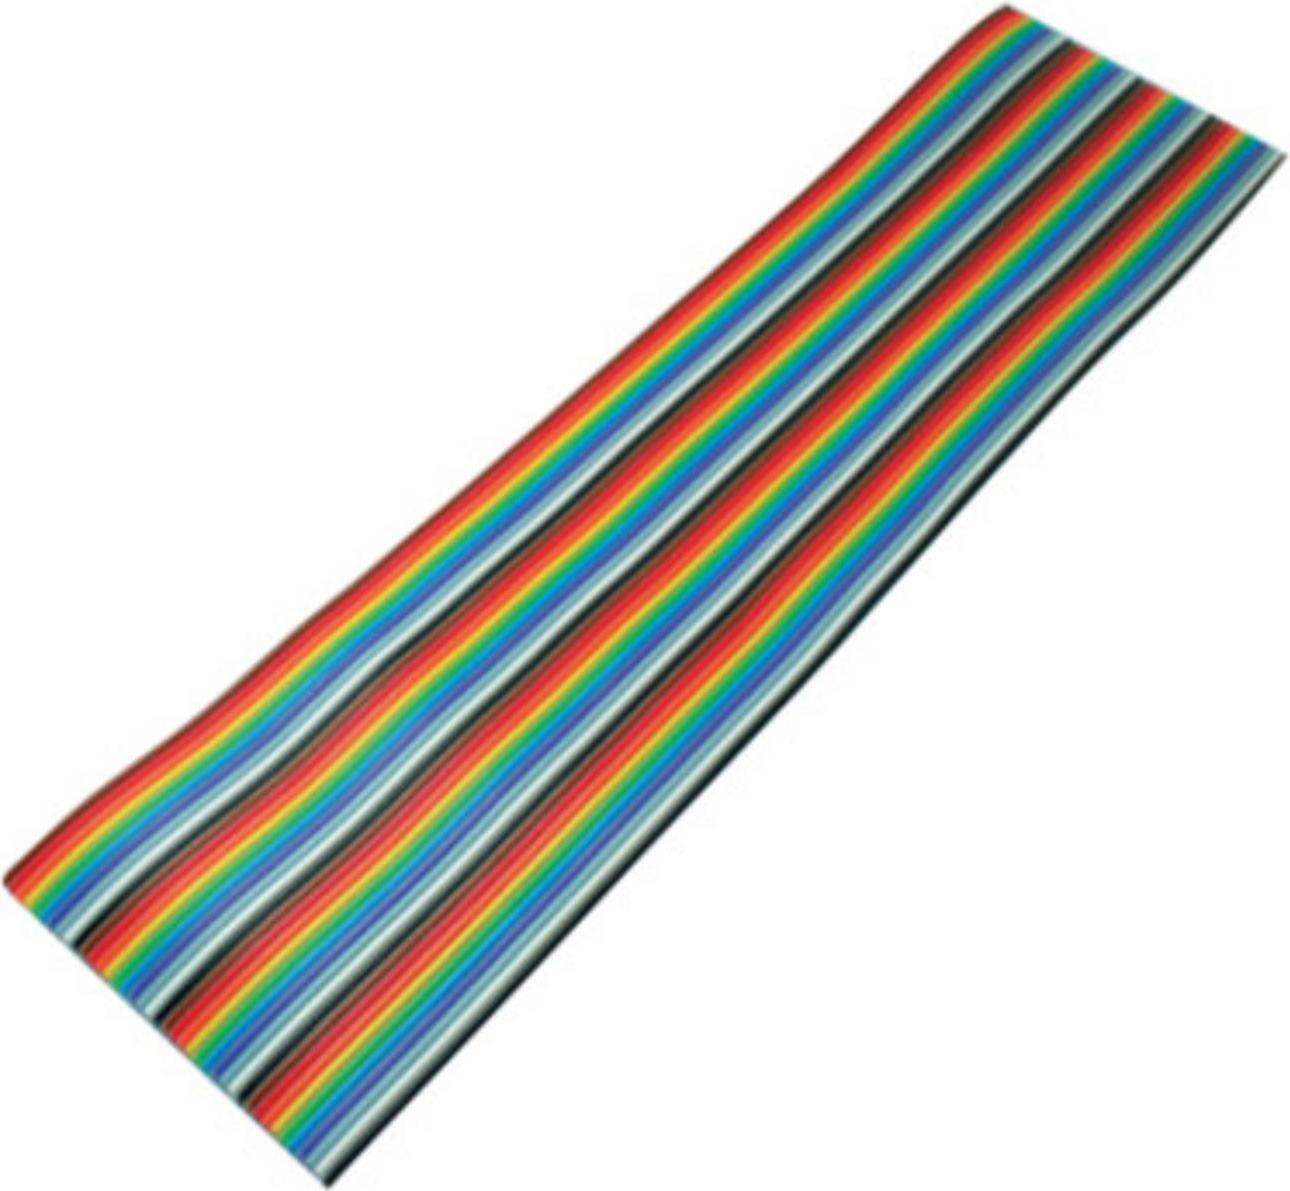 S-CONN S/CONN maximum connectivity Flachkabel, farbig Raster 1,27 mm, 40 pin, 10,0m (79072-10)